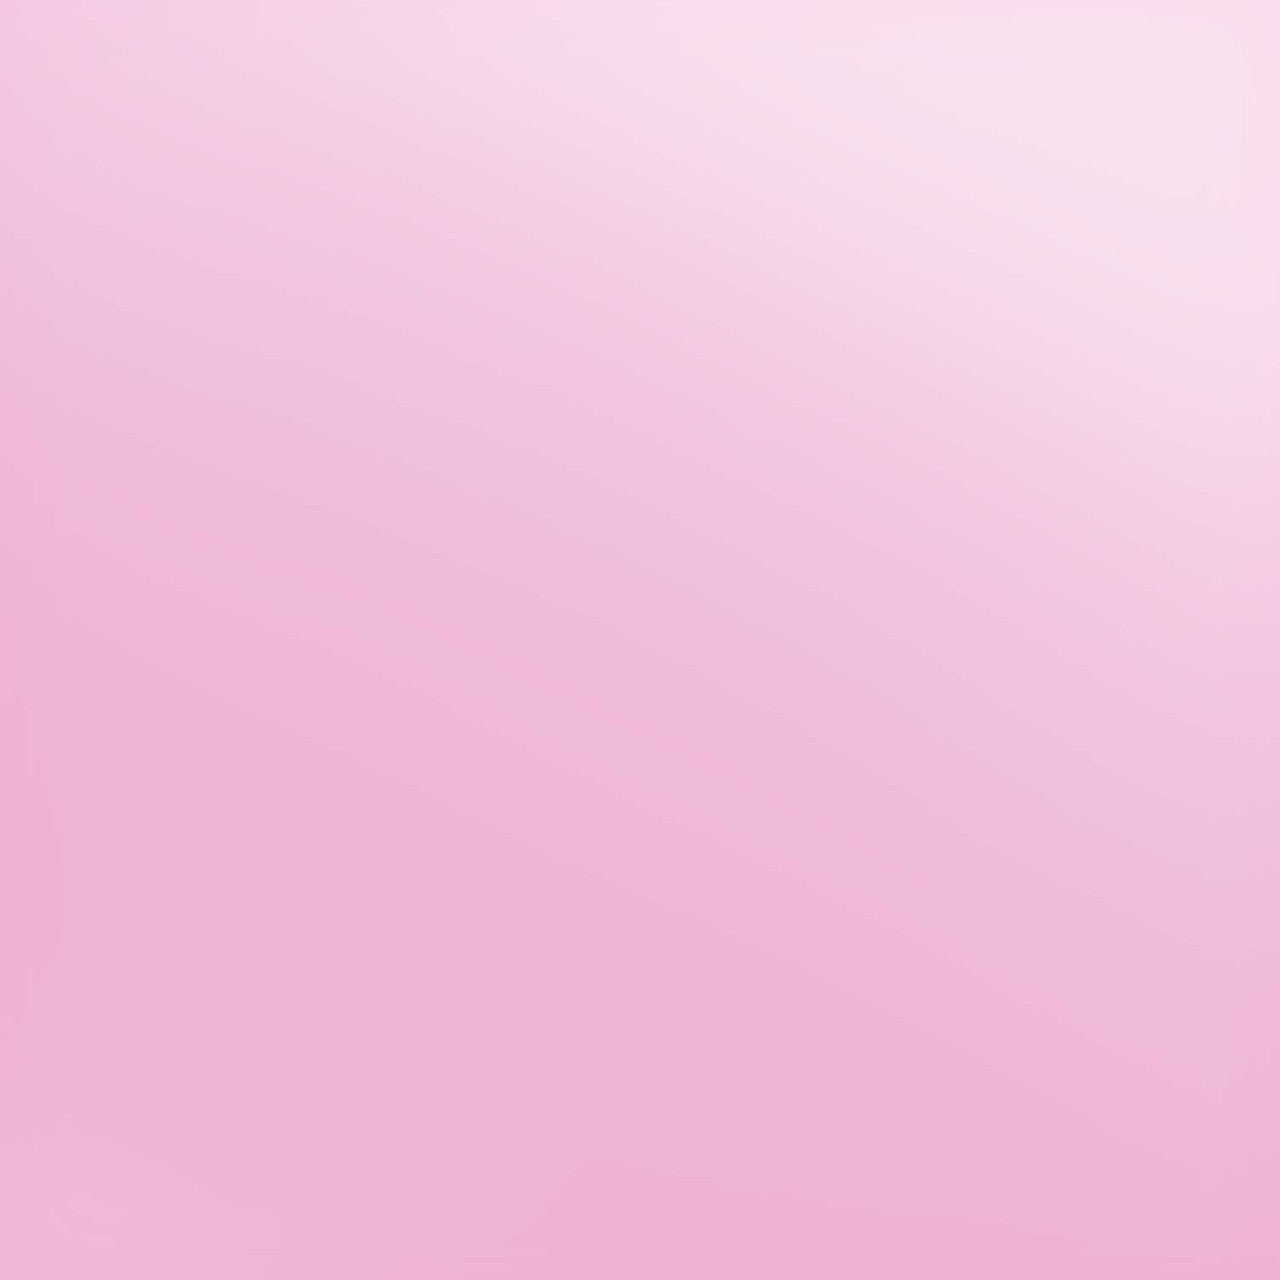 Siser EasyWeed HTV: 12 x 15 Sheet - Pink